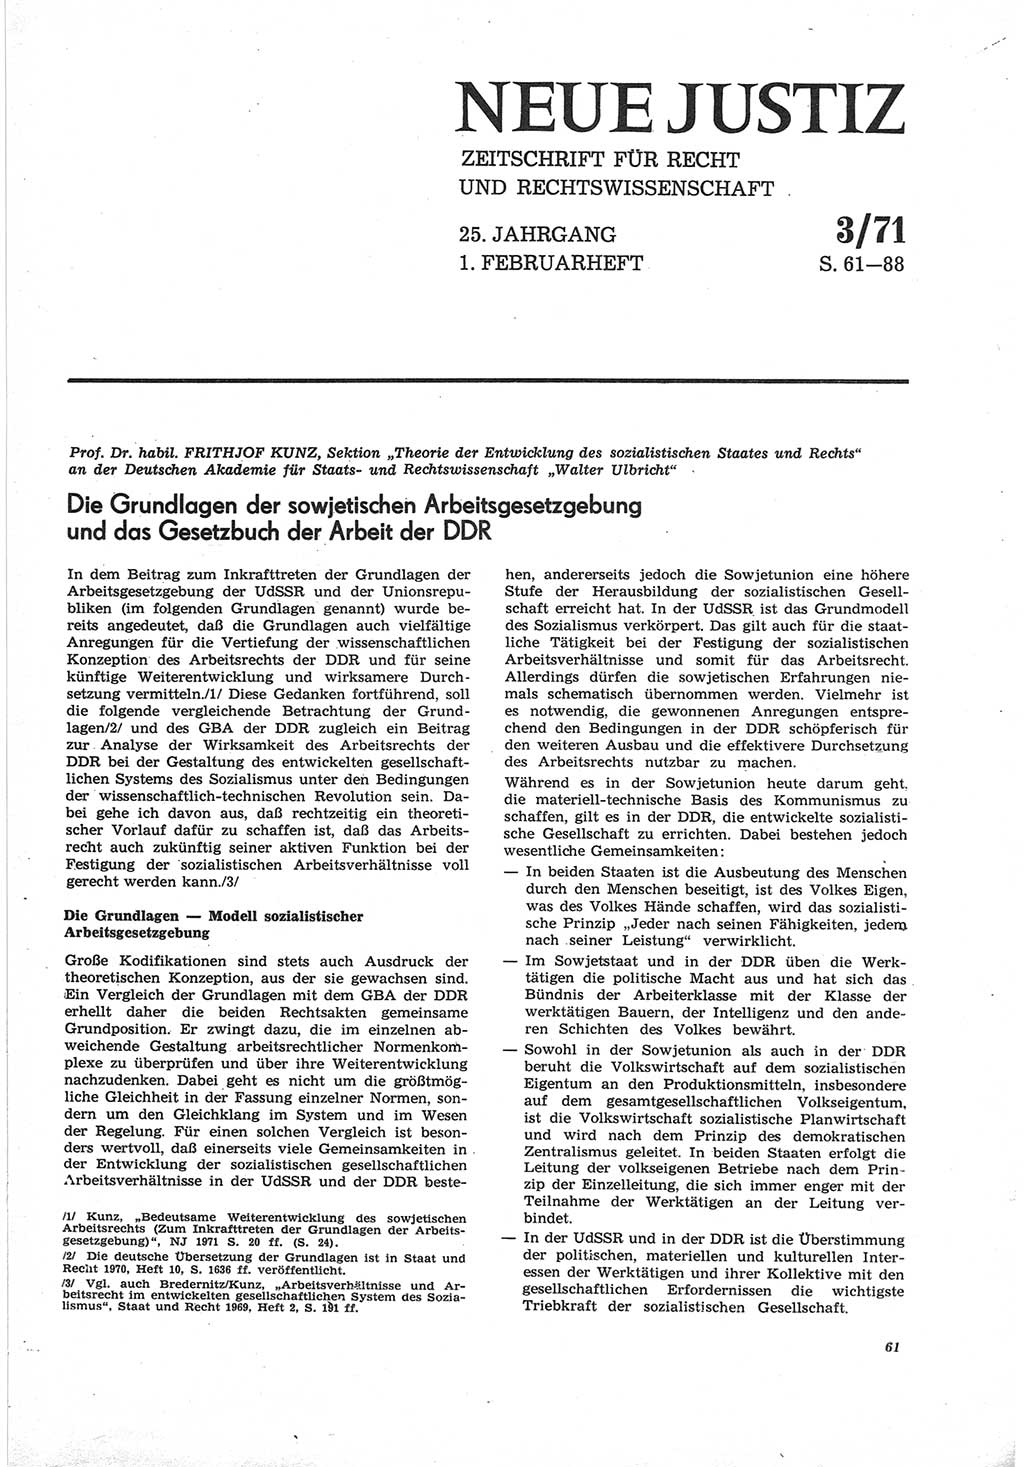 Neue Justiz (NJ), Zeitschrift für Recht und Rechtswissenschaft [Deutsche Demokratische Republik (DDR)], 25. Jahrgang 1971, Seite 61 (NJ DDR 1971, S. 61)